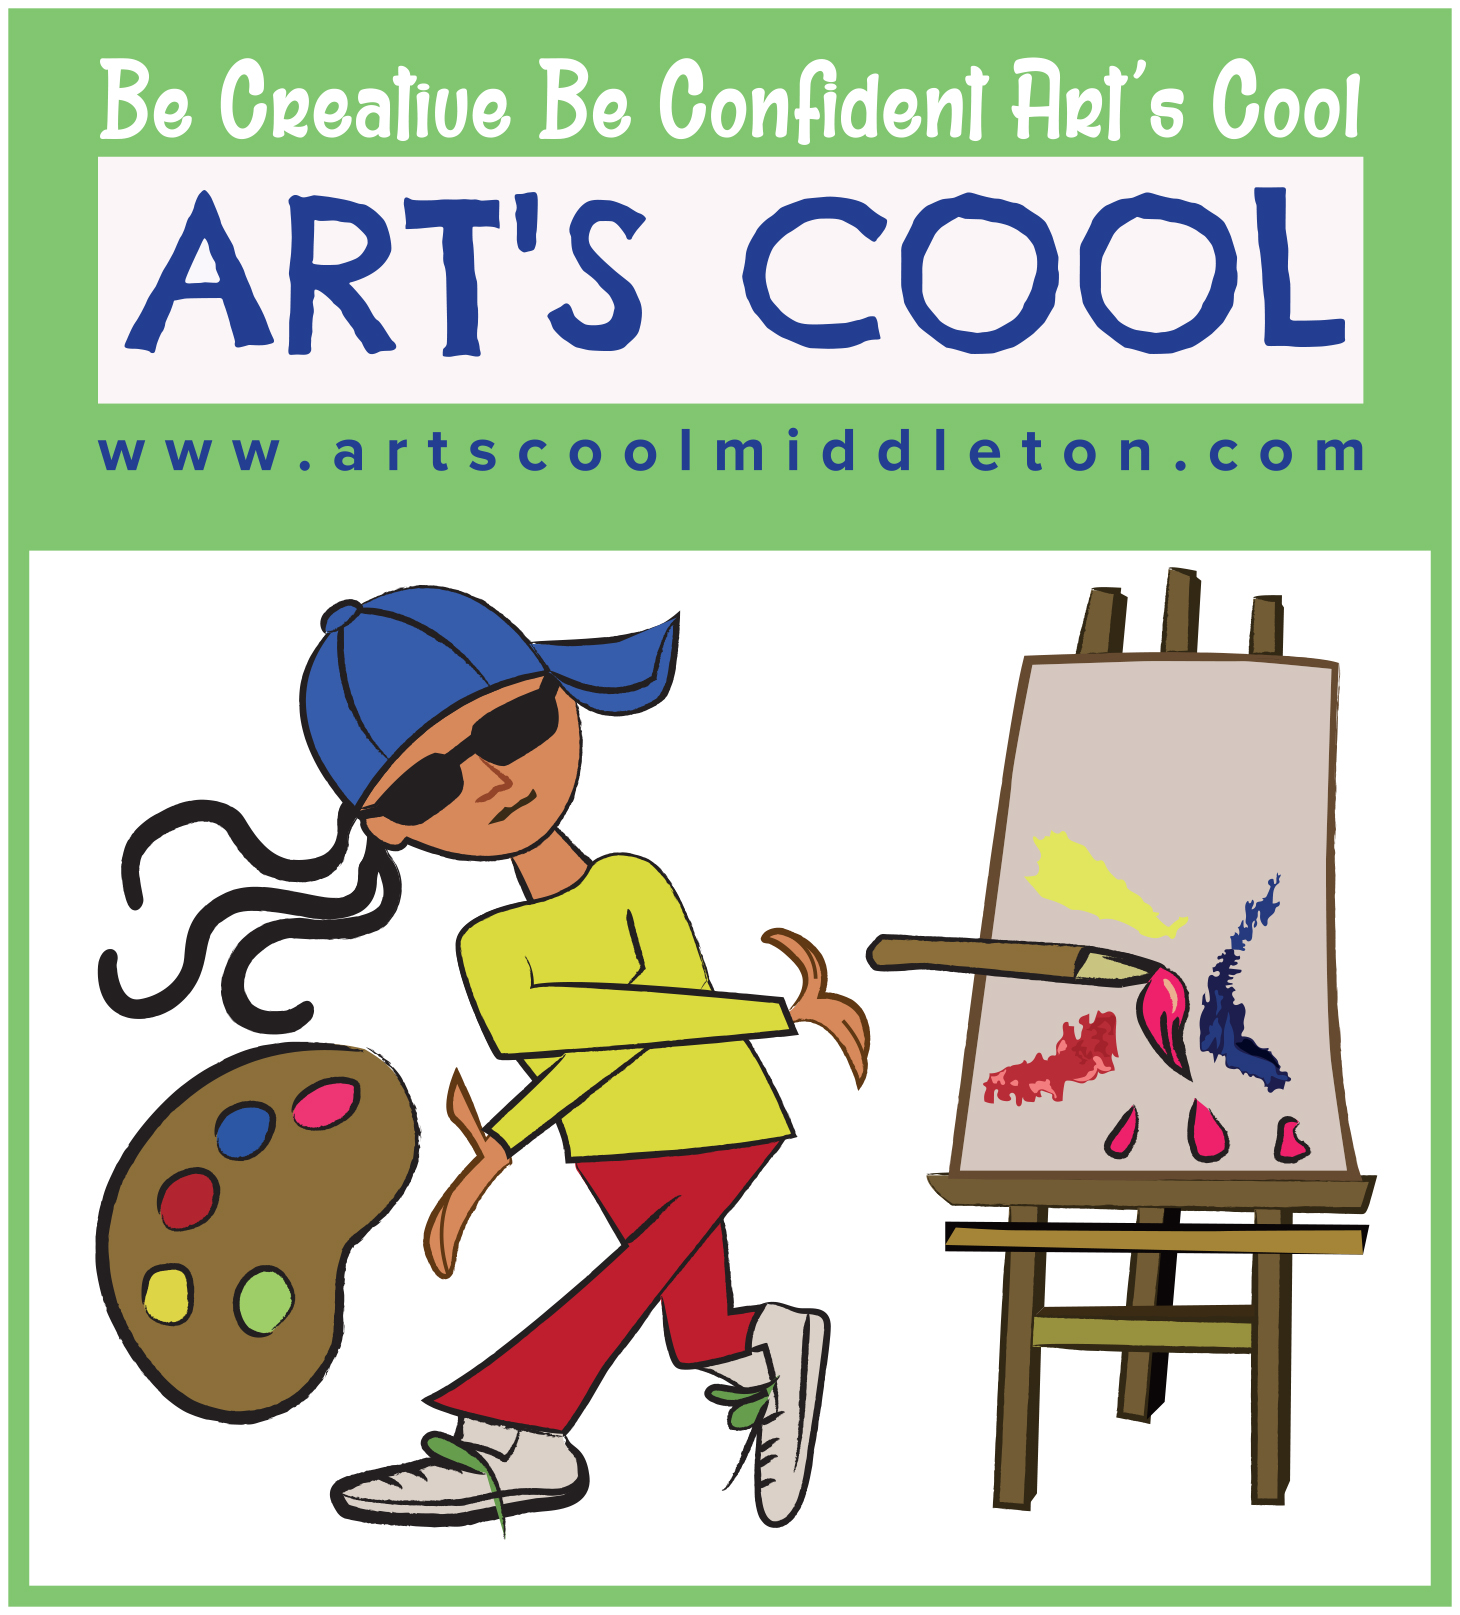 ArtsCool Logo.jpg